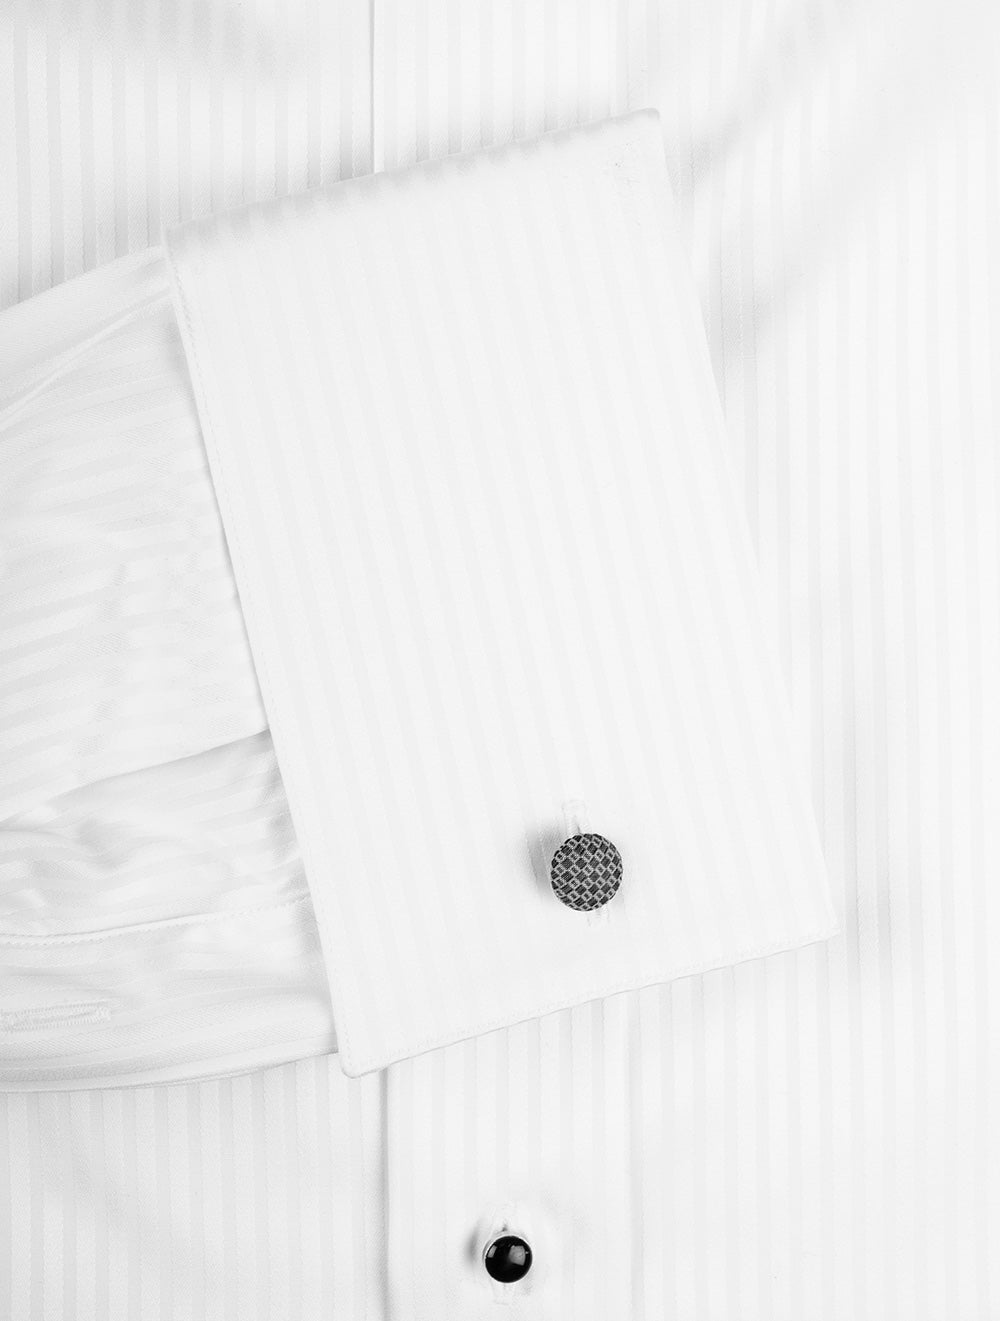 Eton White Striped Satin Tuxedo Shirt